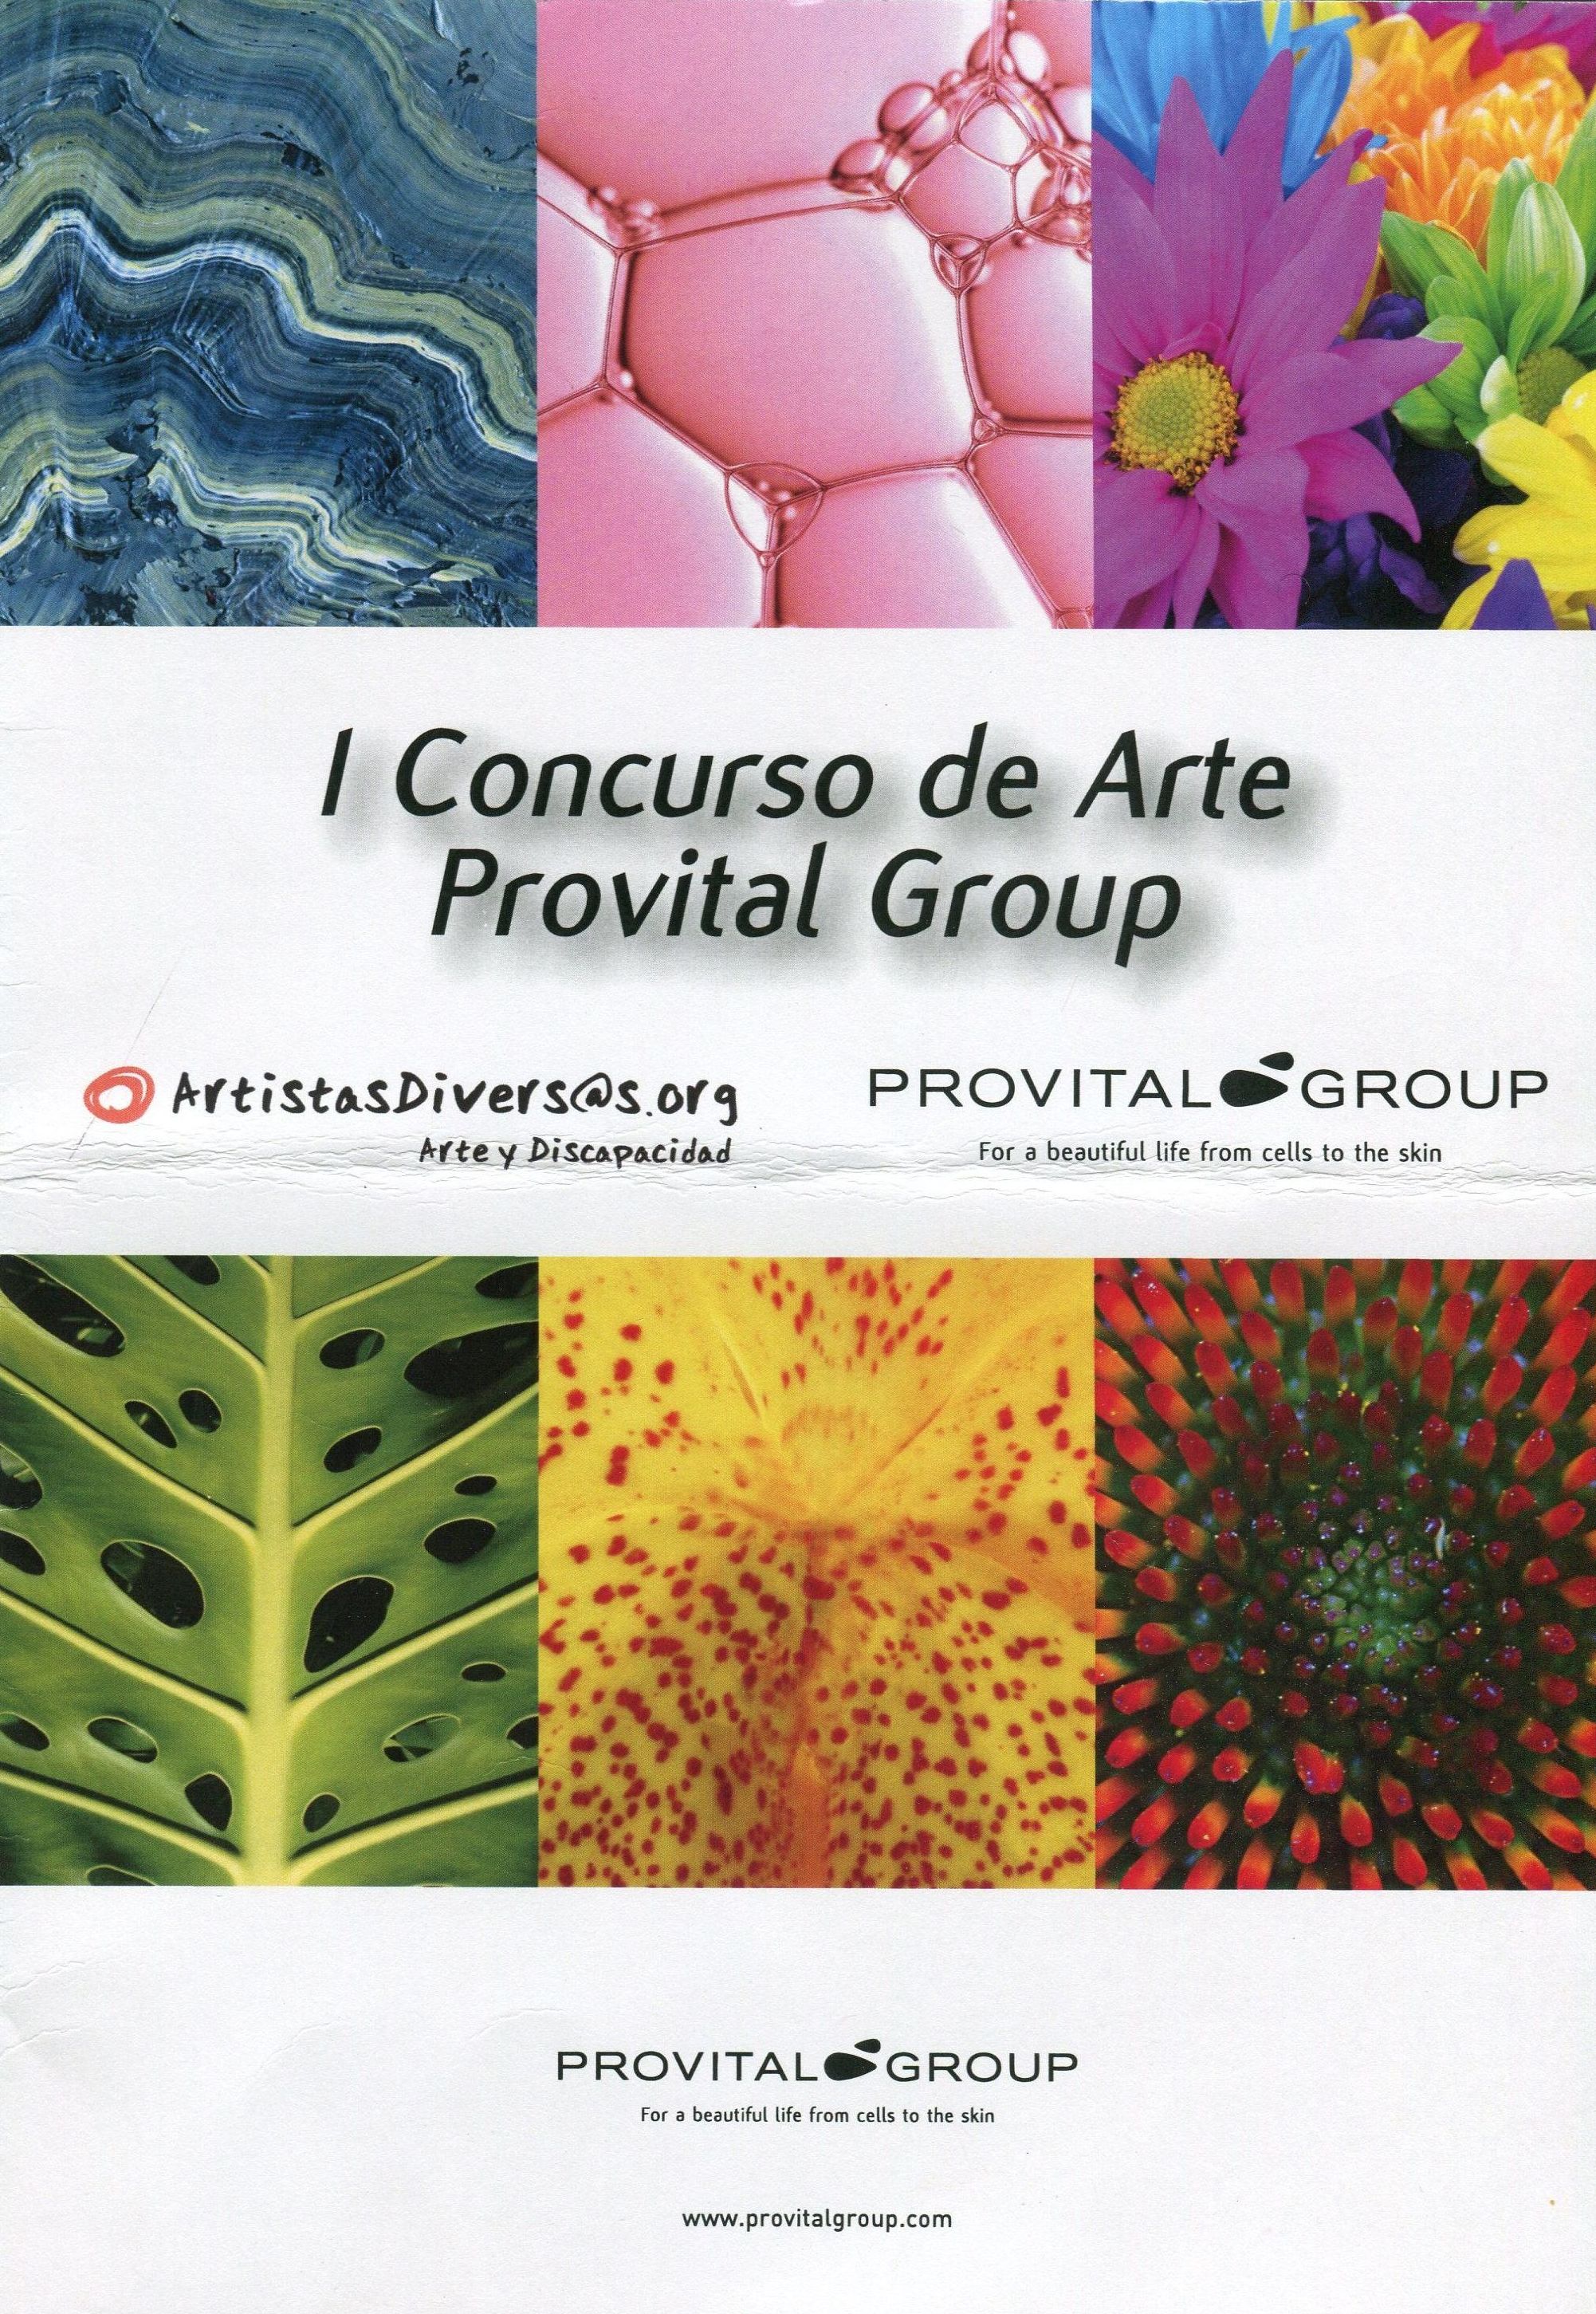 I Concurso de Arte Provital Group